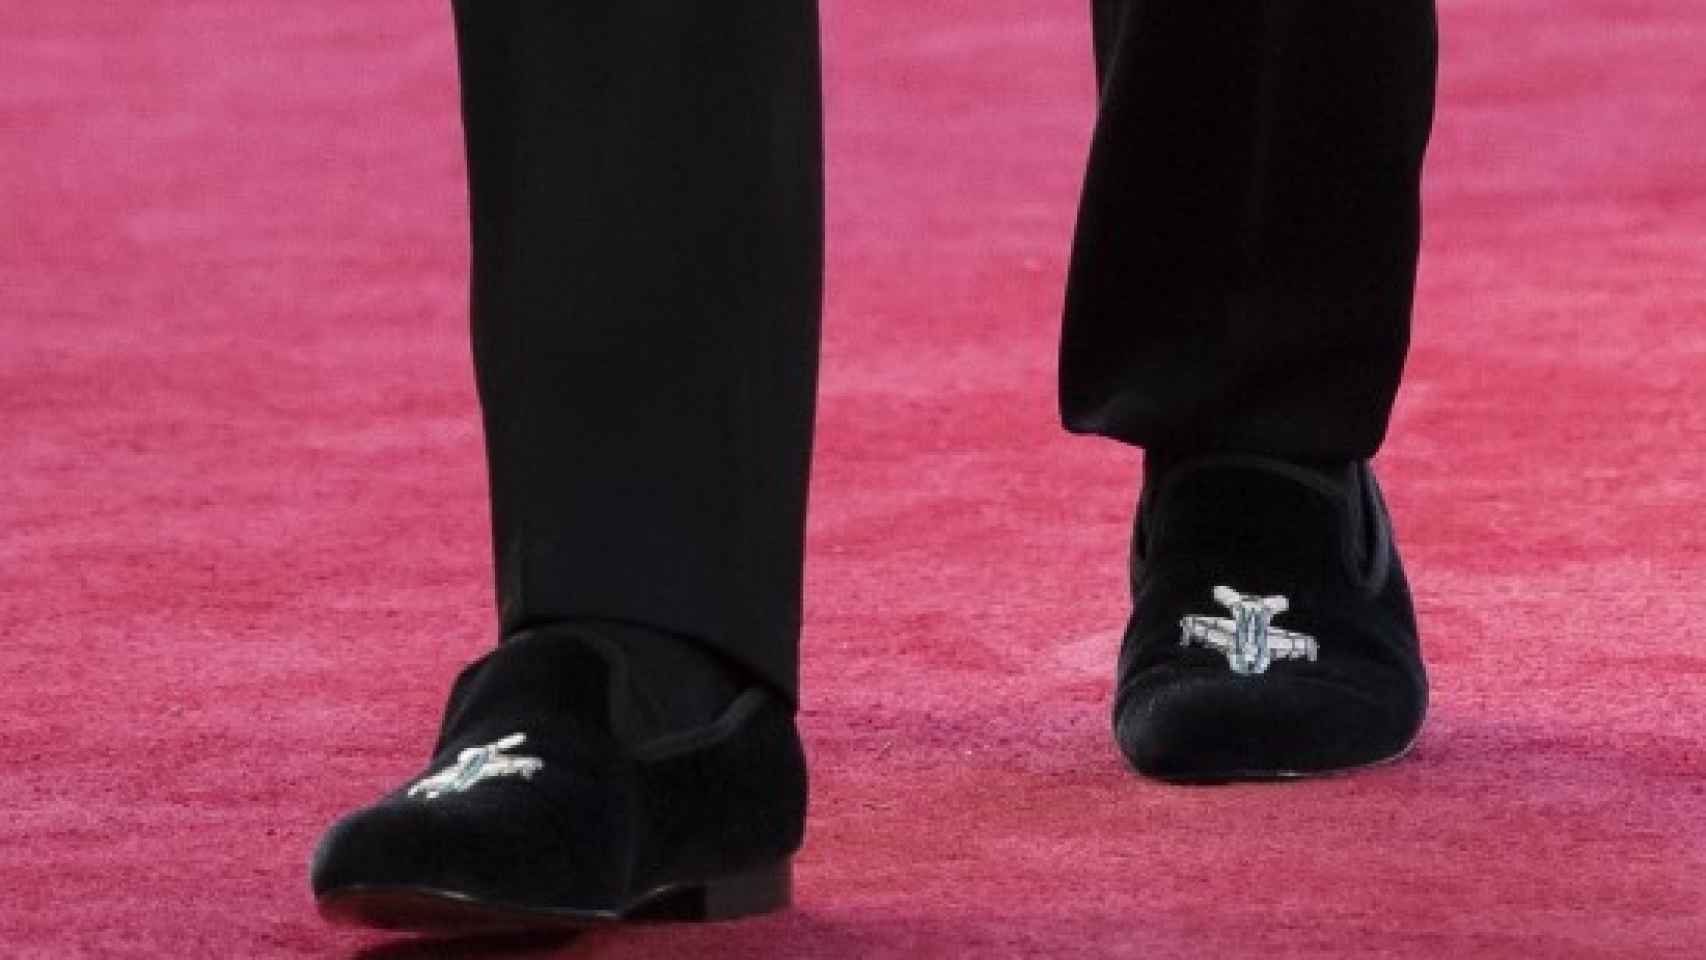 Los zapatos del príncipe llevaban un avión bordado.